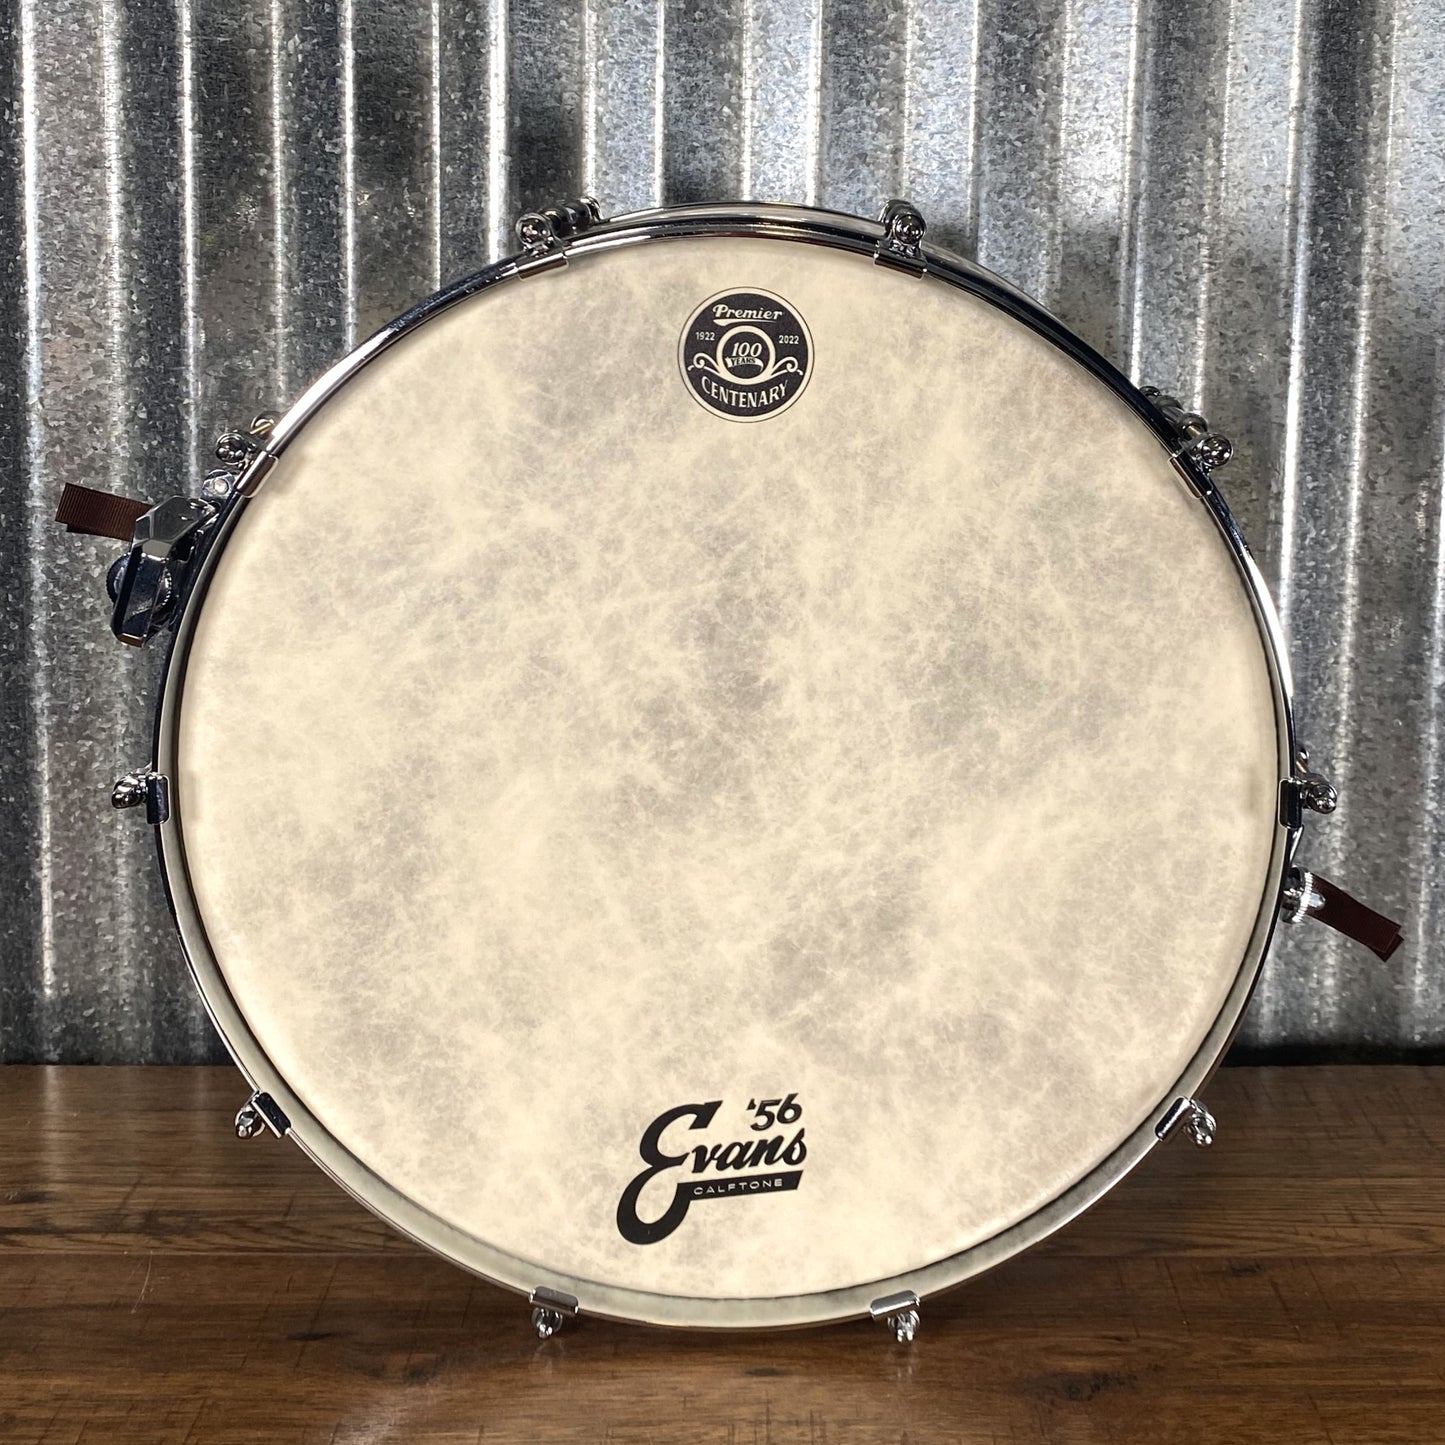 Premier DP100 Della-Porta 47 of 100 Limited Edition Walnut Snare Drum